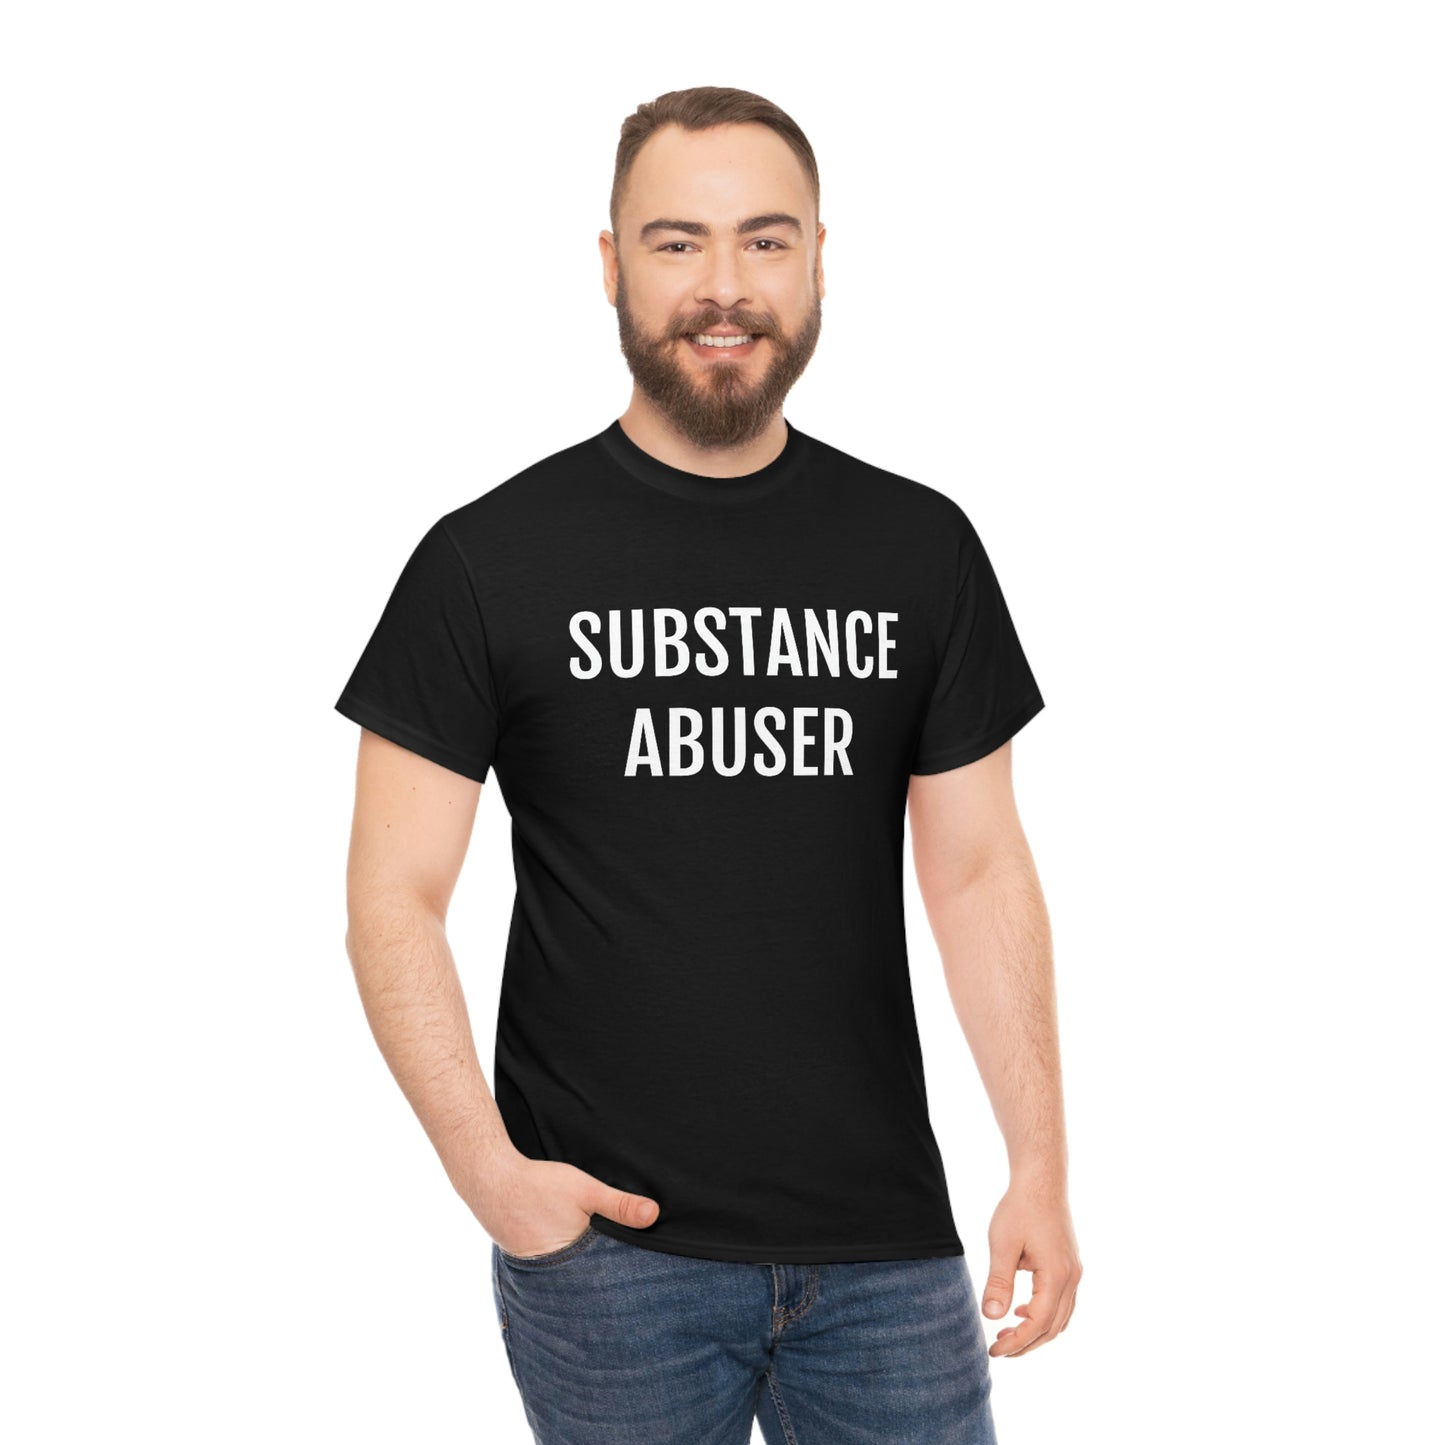 SUBSTANCE ABUSER T-SHIRT